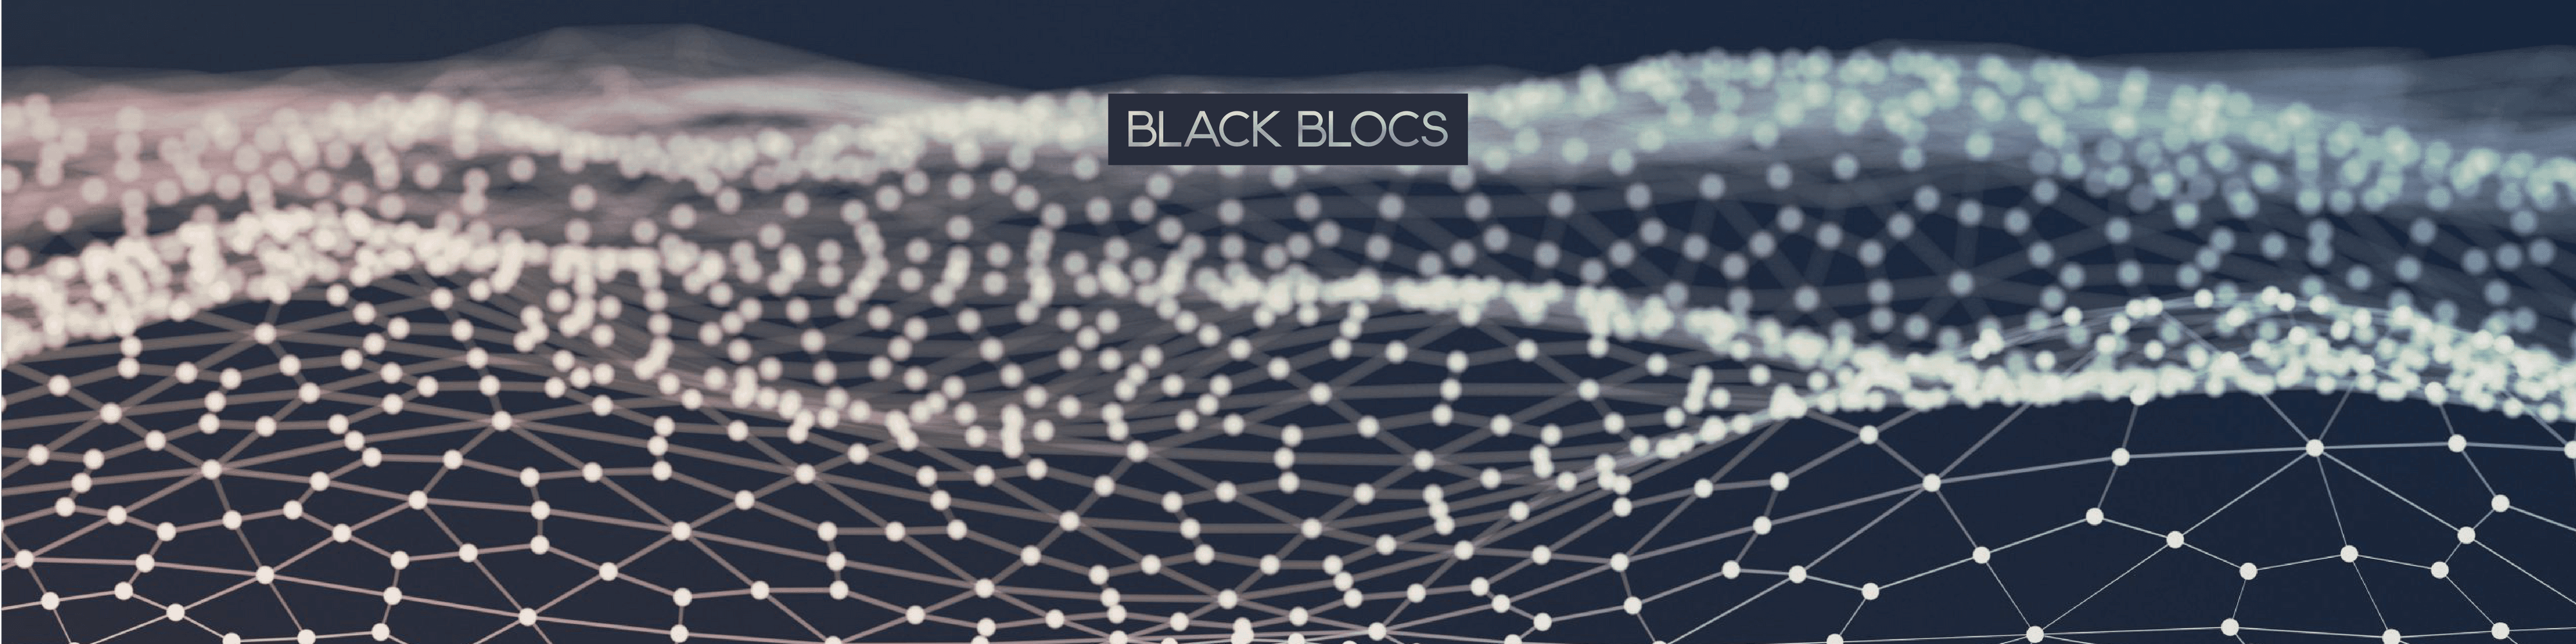 Black-Blocs-2 banner